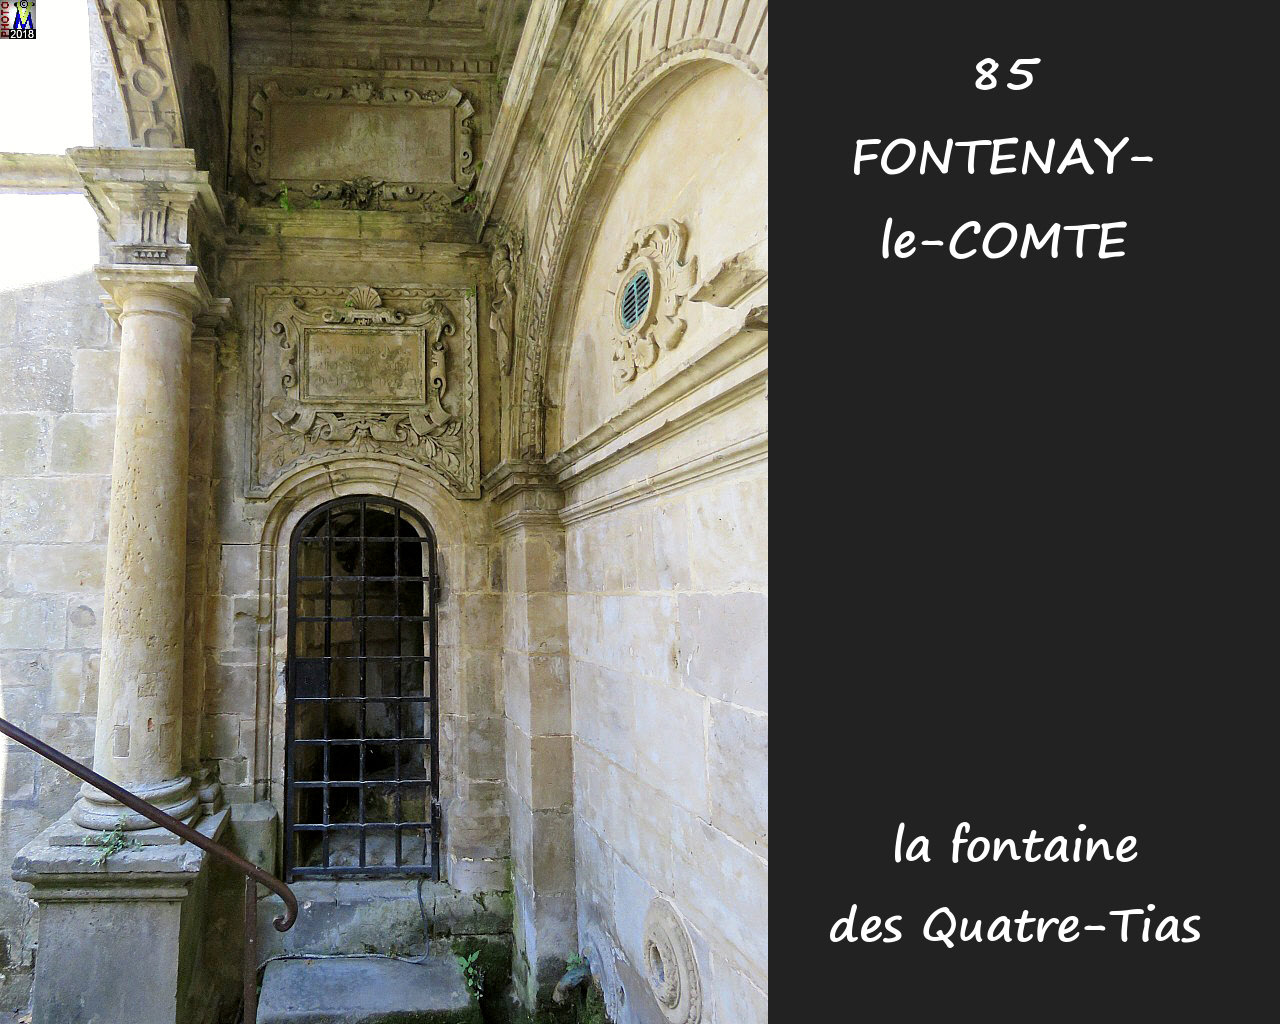 85FONTENAY-COMTE_fontaine4Tias_1006.jpg